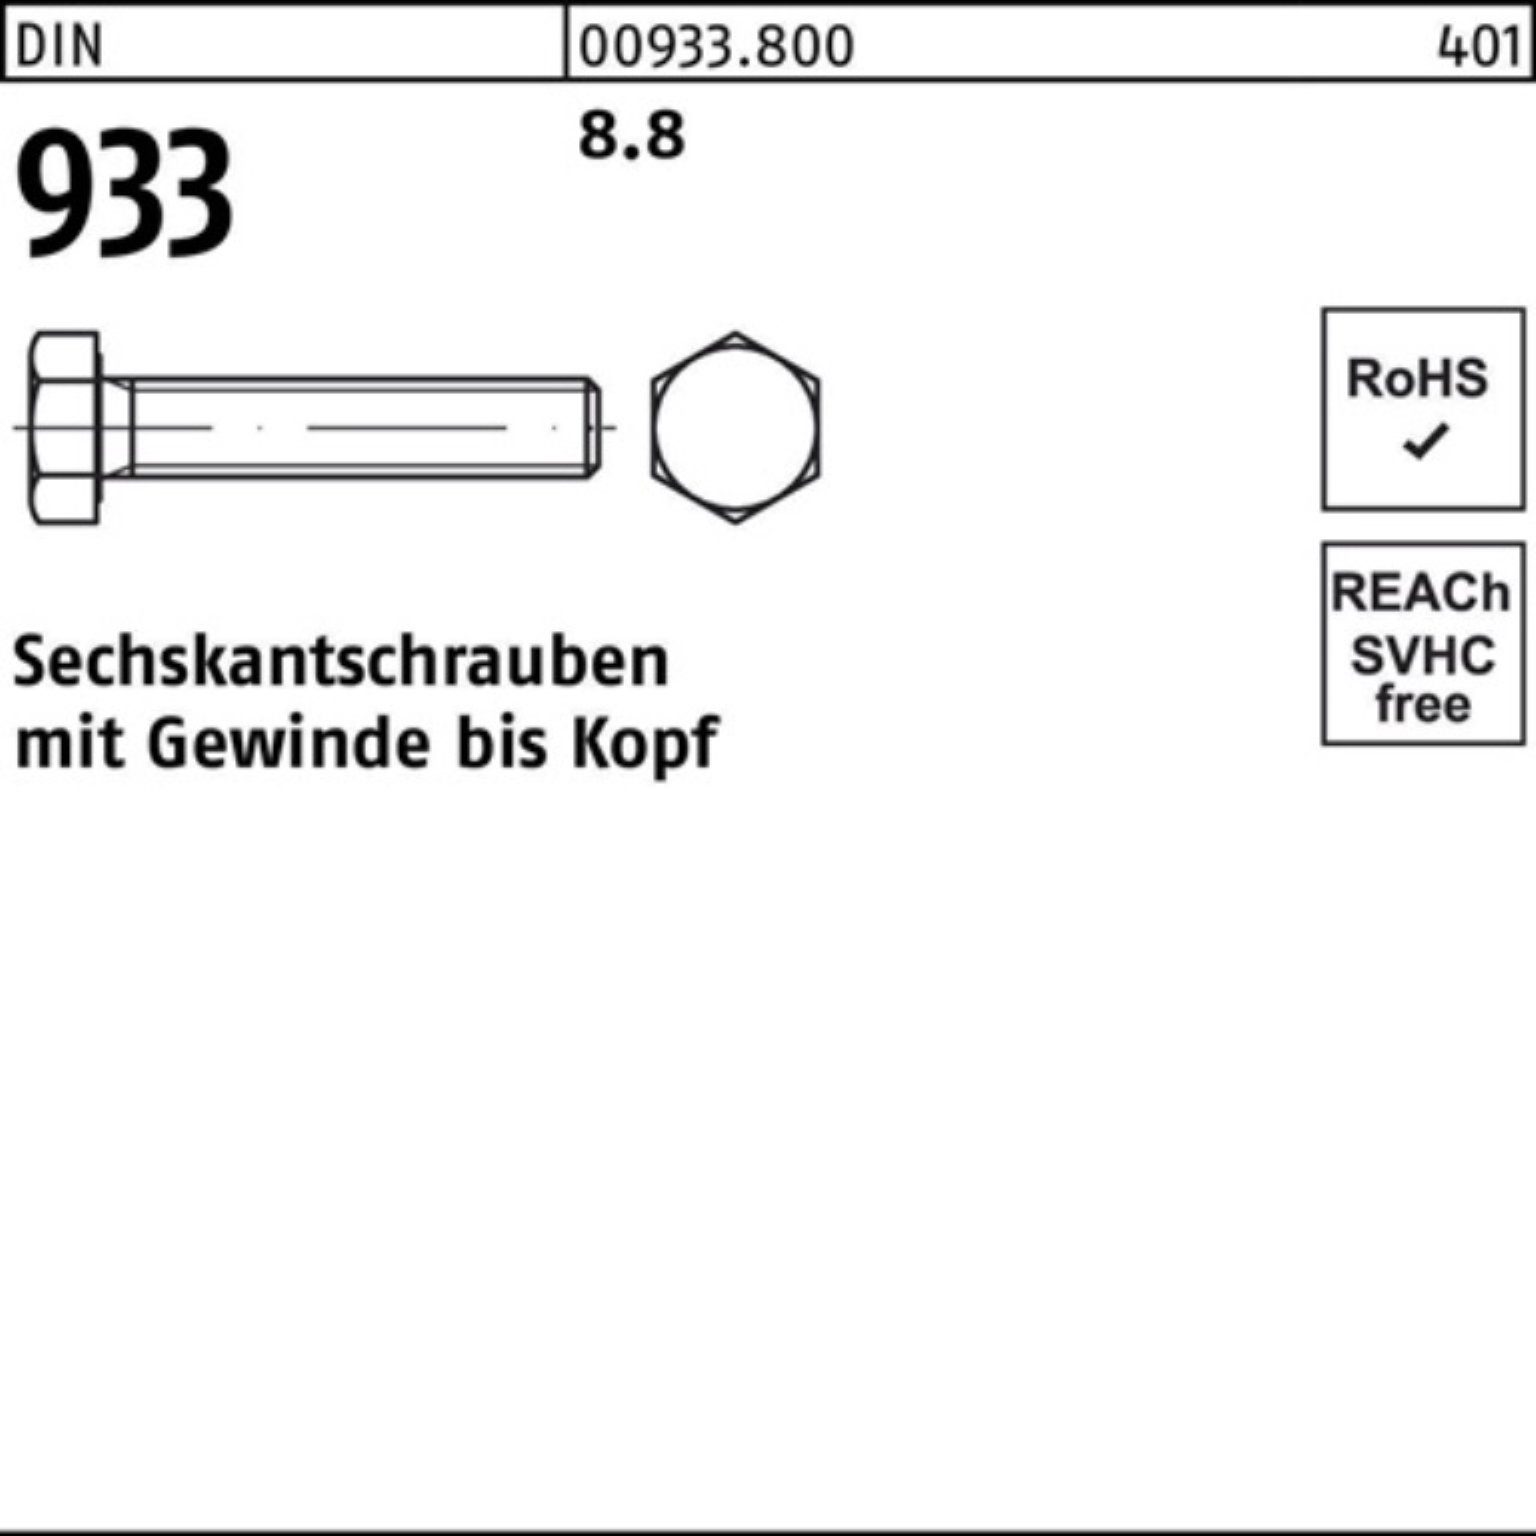 180 1 Reyher Sechskantschraube M30x 8.8 DIN Stück 933 933 100er Pack DIN VG Sechskantschraube